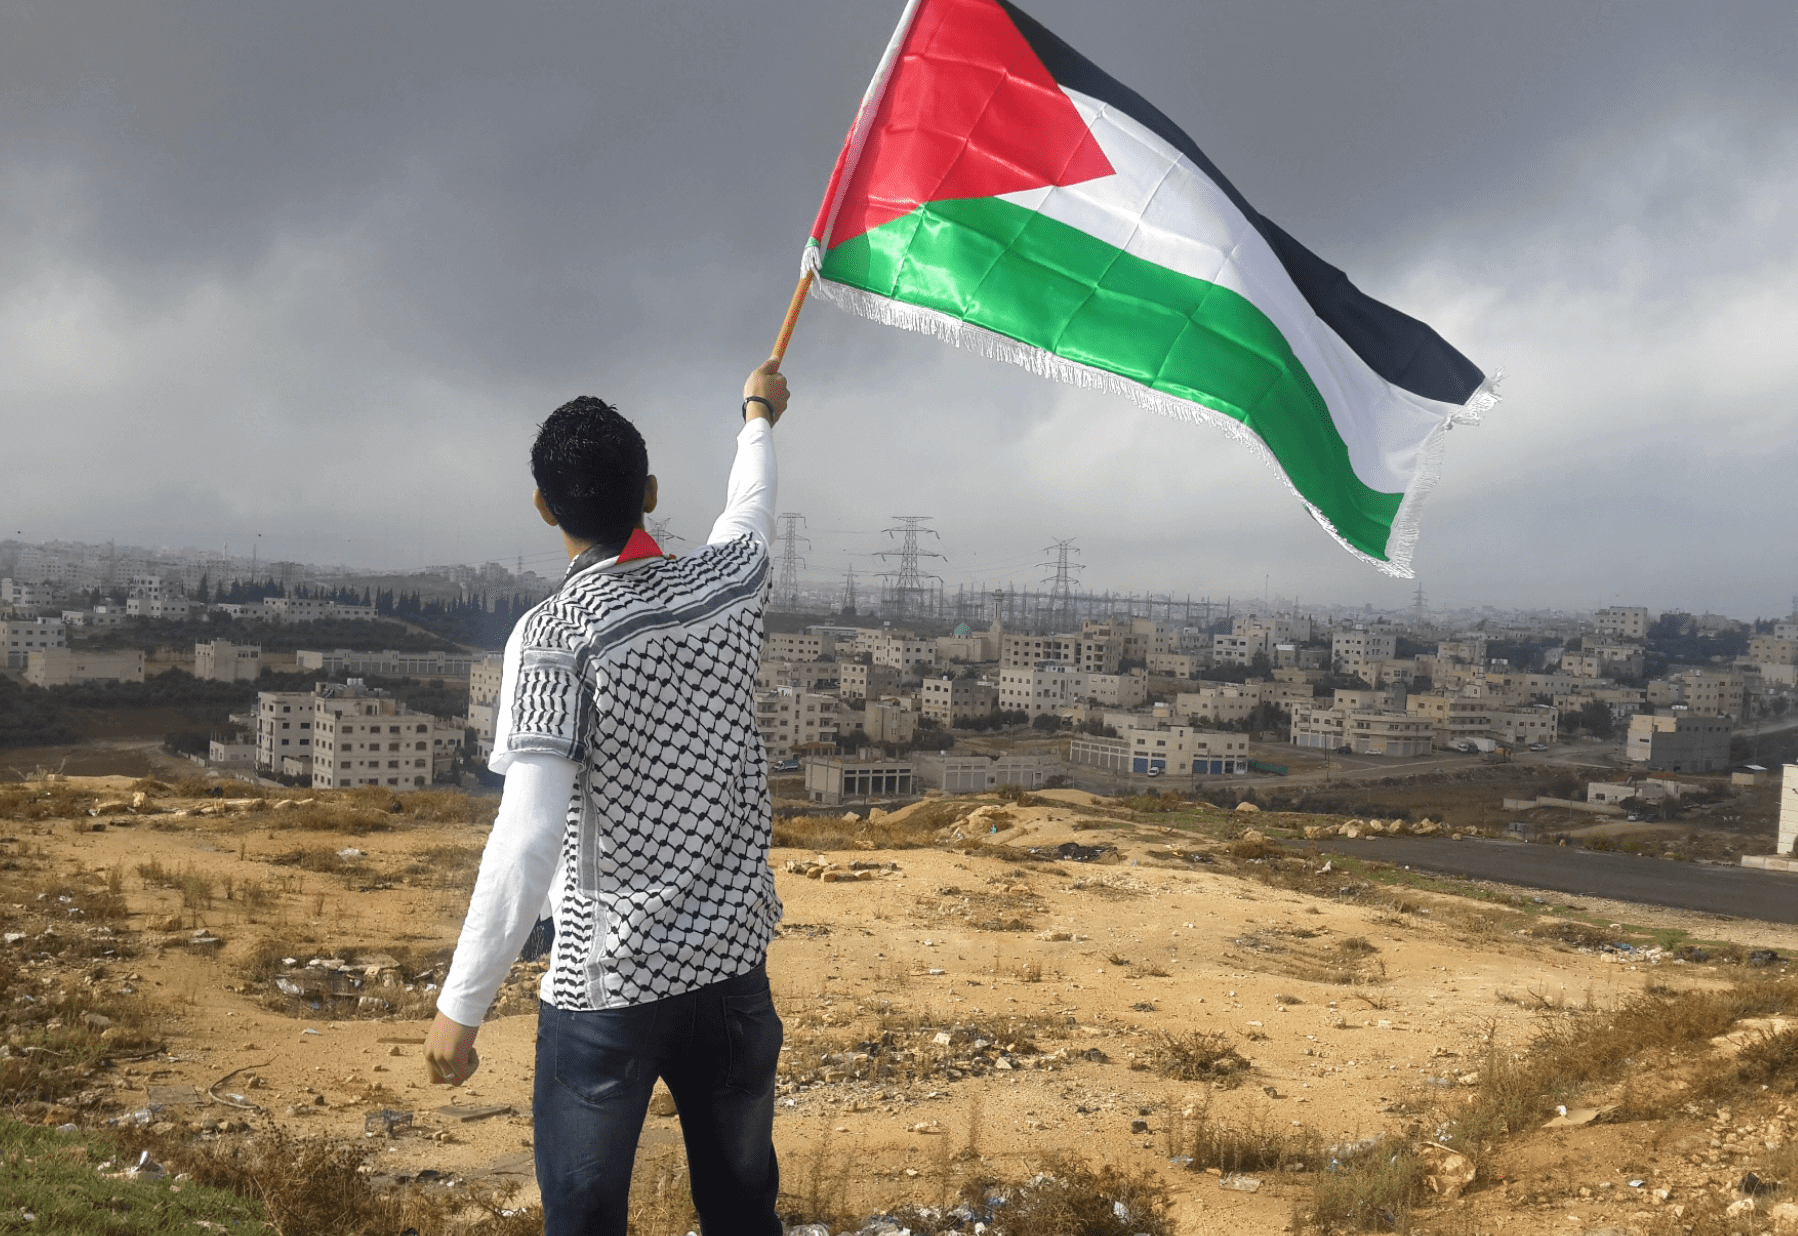 Per a la resolució pacífica del conflicte entre Palestina i Israel